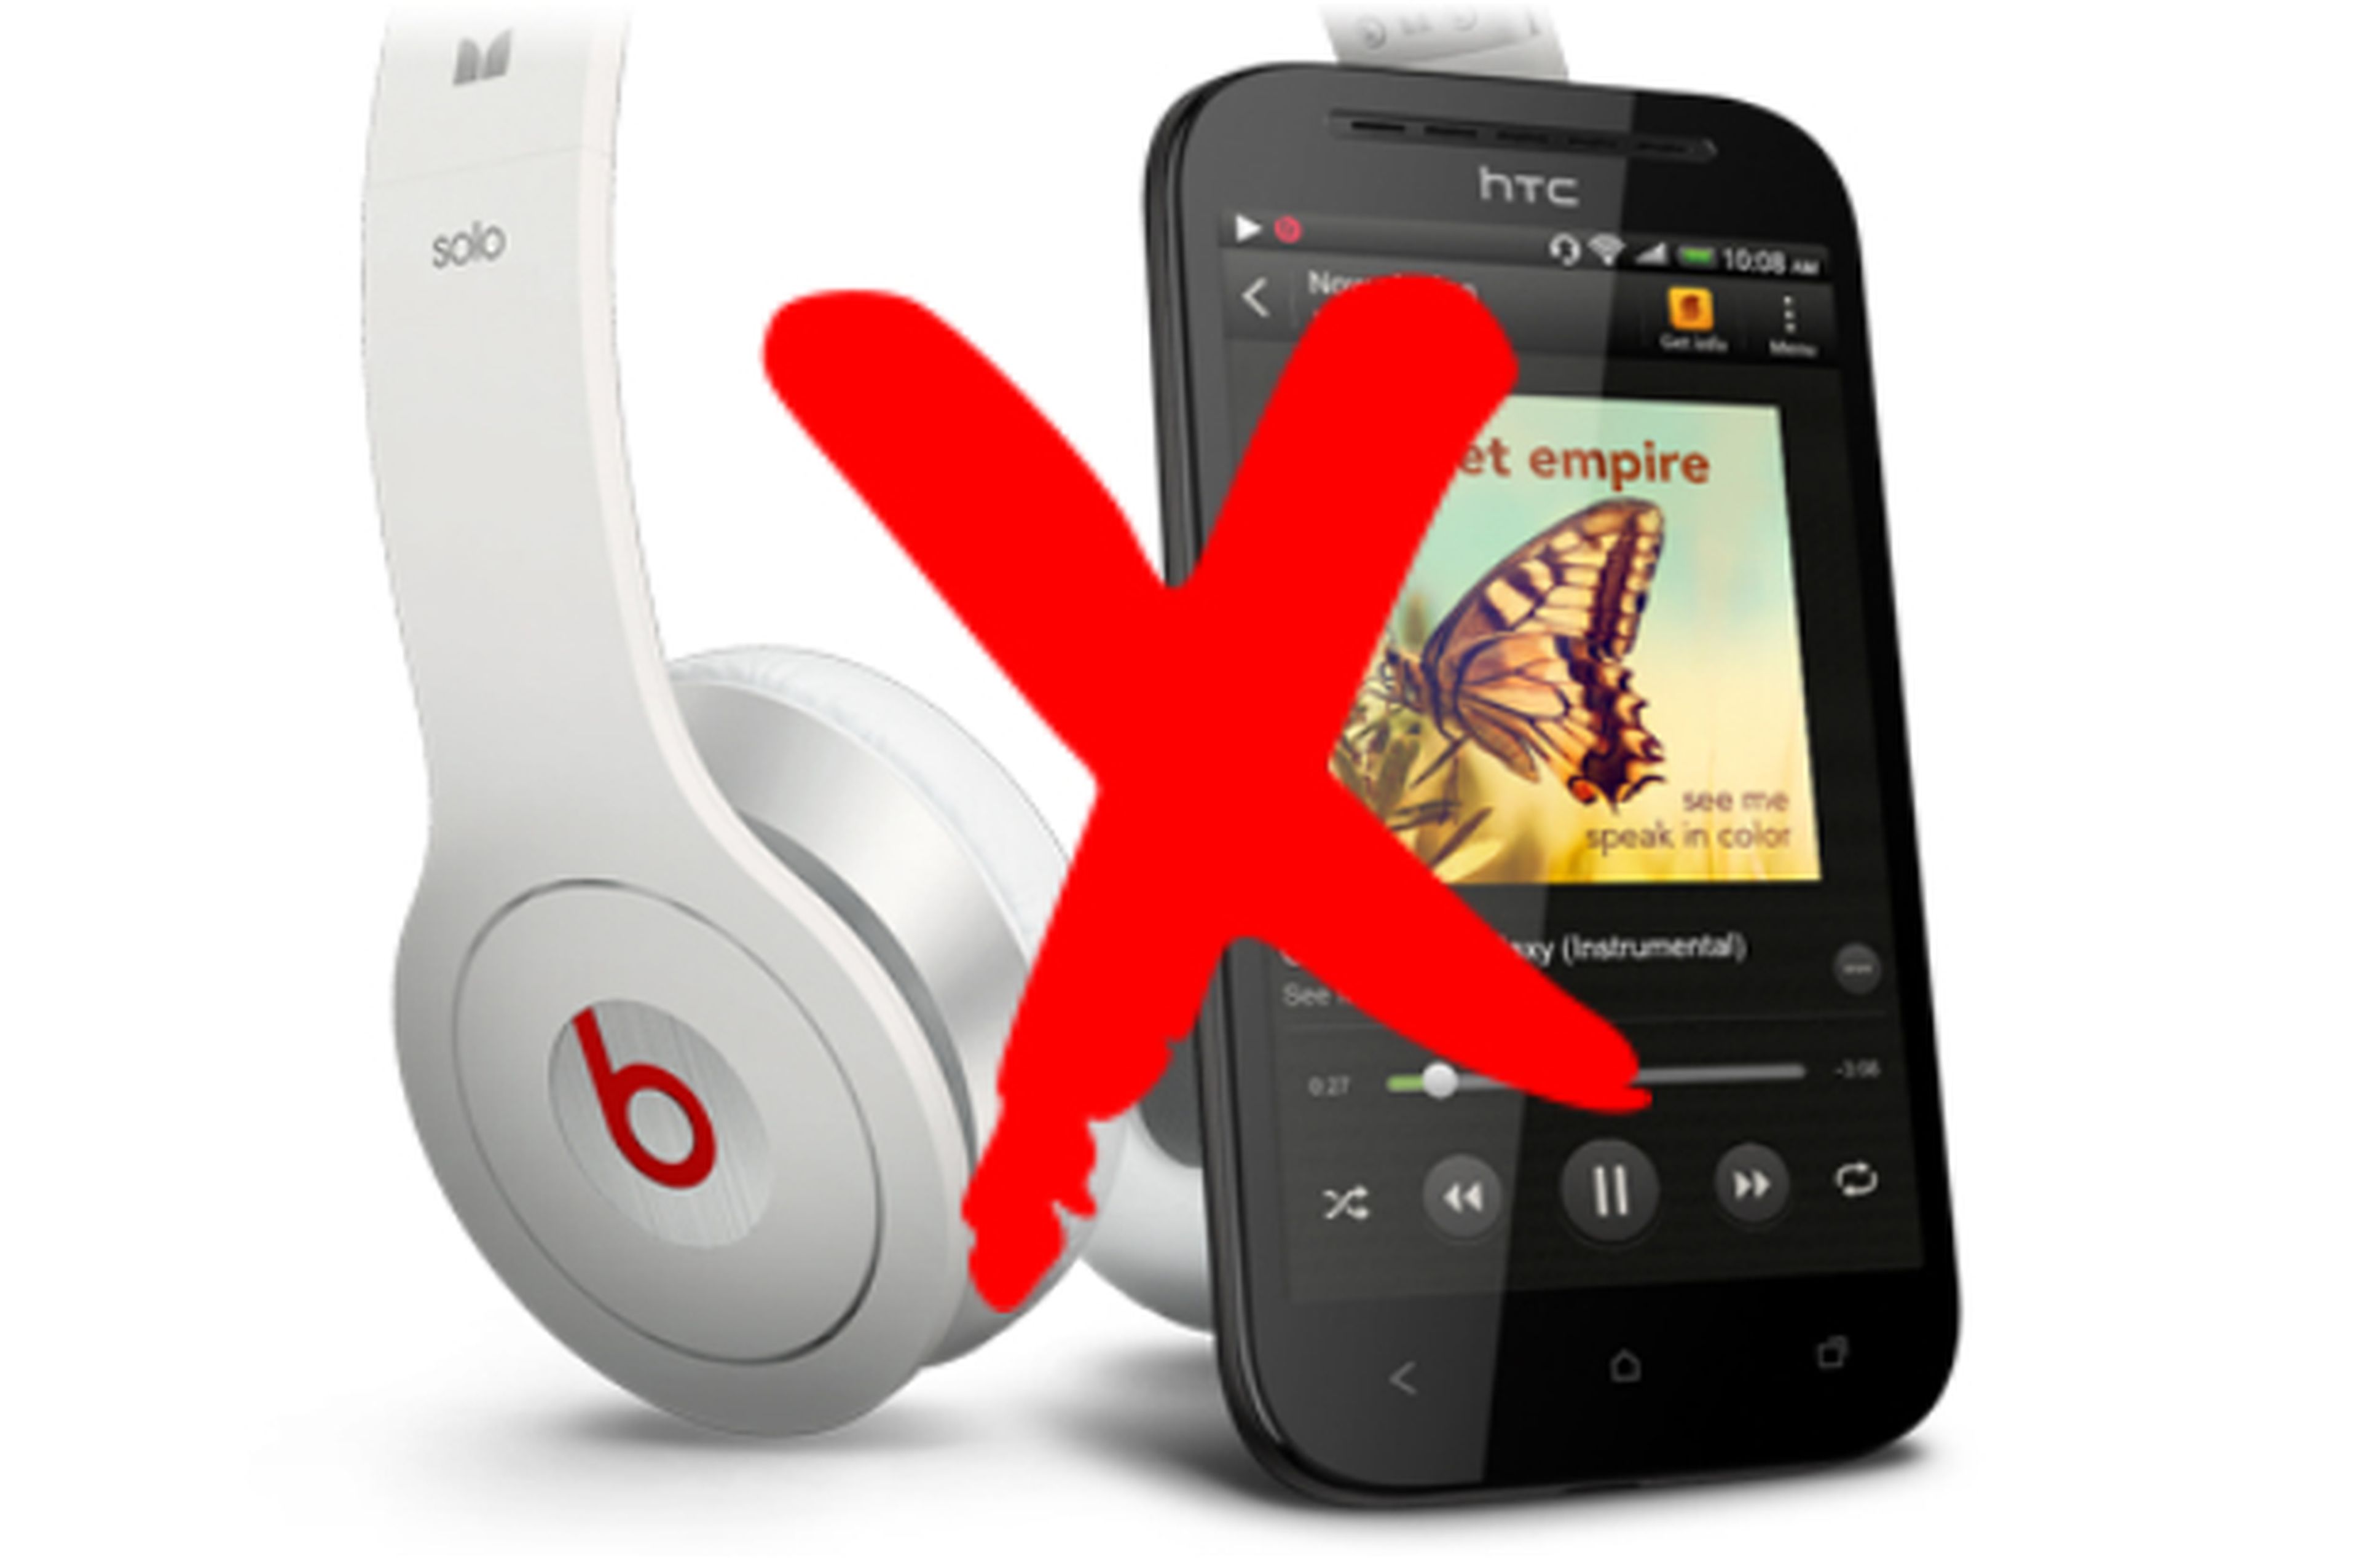 Auriculares Beats Audio y móvil HTC